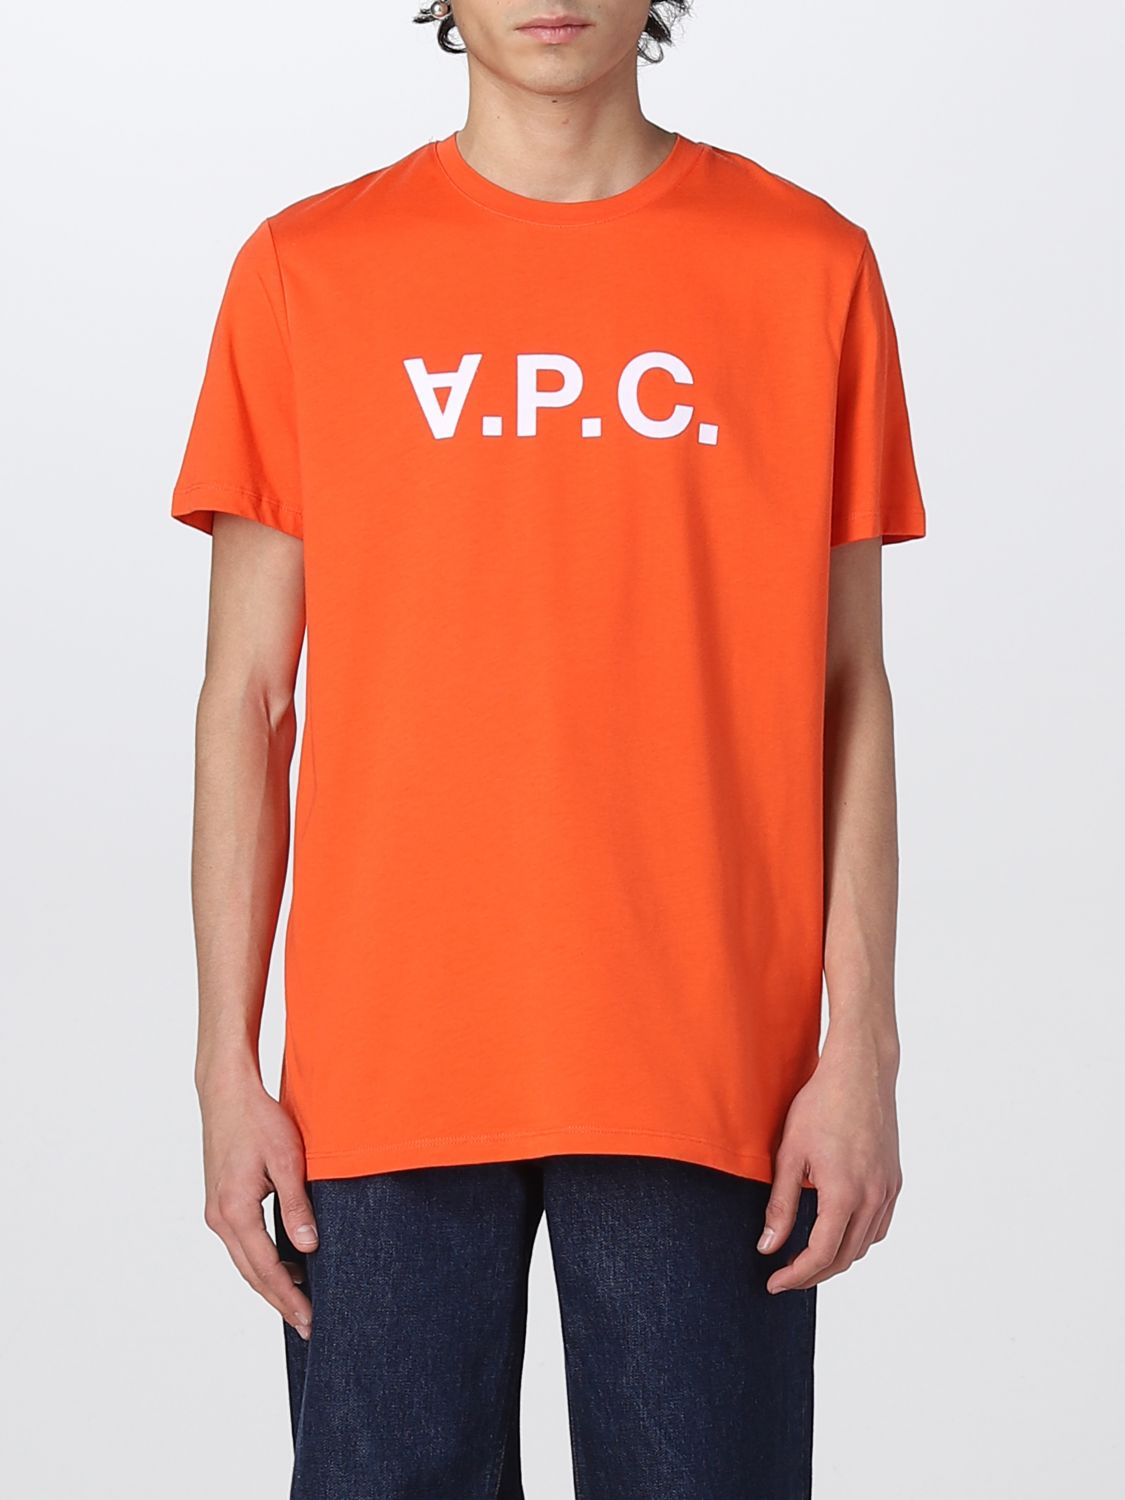 T恤 A.P.C. 男士 颜色 橙色